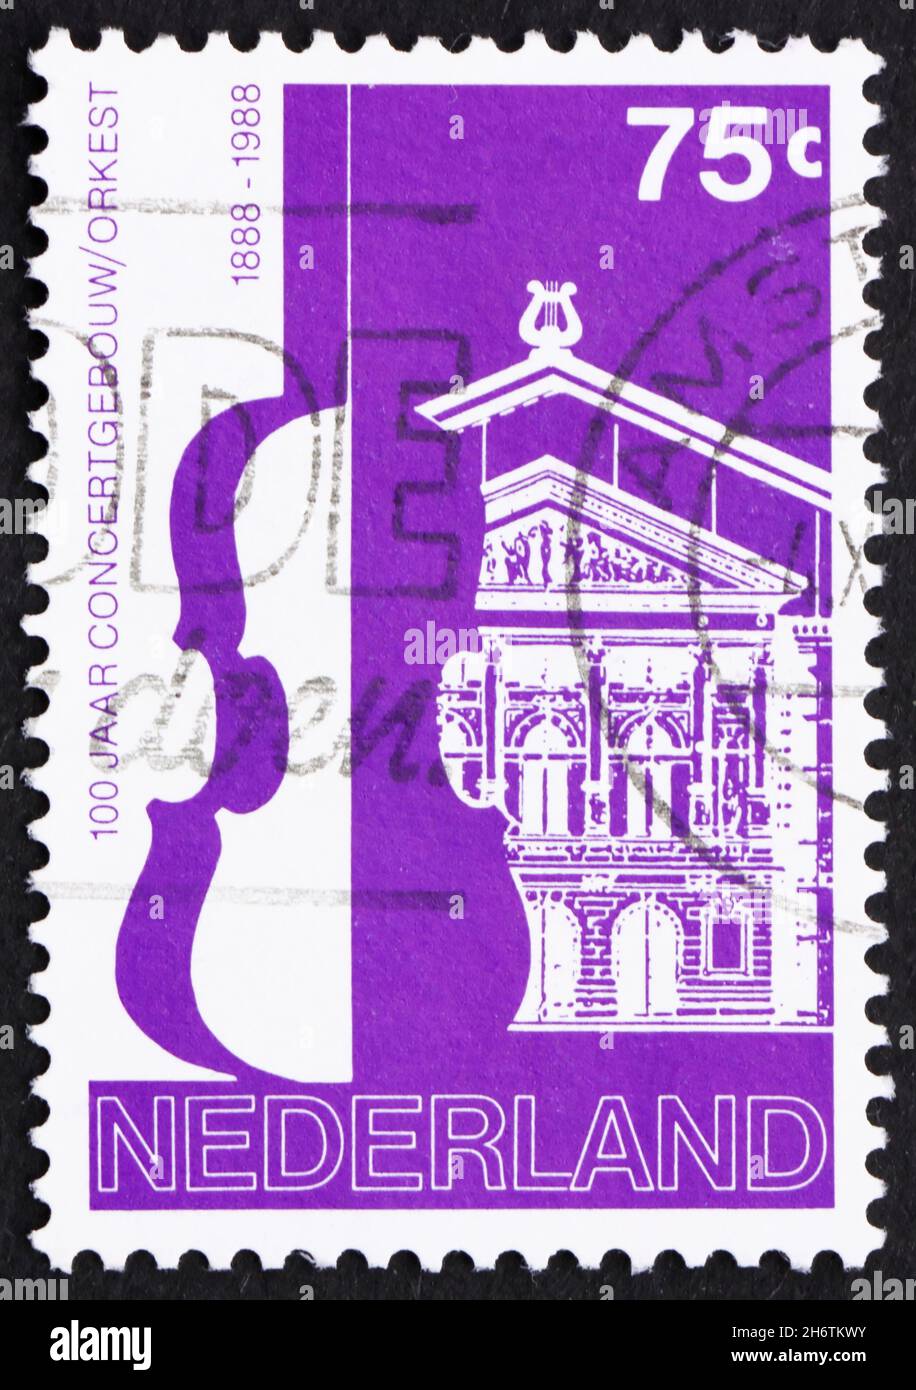 NIEDERLANDE - UM 1988: Eine in den Niederlanden gedruckte Briefmarke zeigt das Amsterdamer Concertgebouw und das Orchester, hundertjähriges Jubiläum, um 1988 Stockfoto